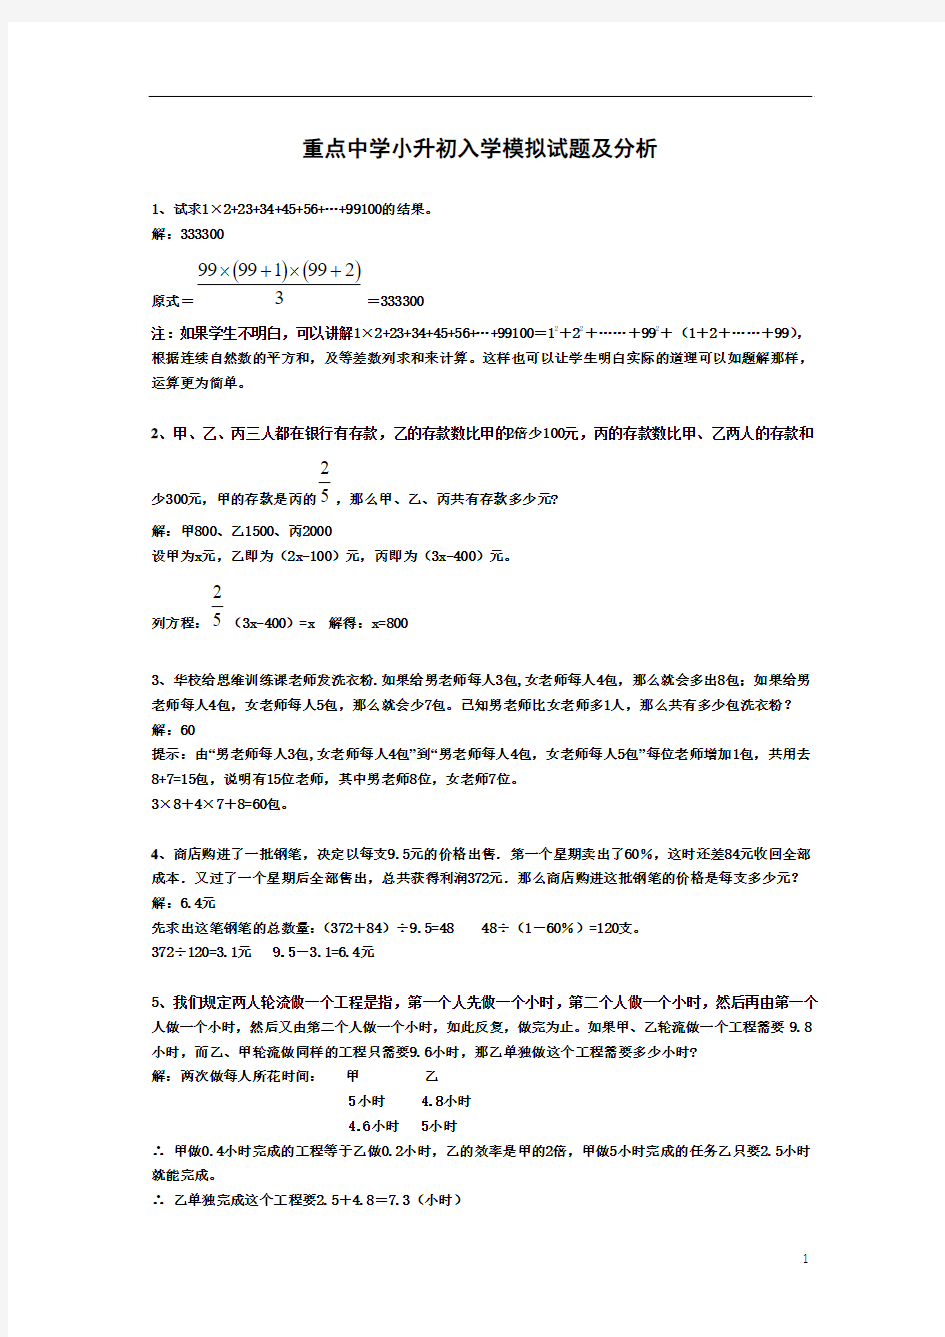 2013年小升初数学分班考试题及答案详解(四_)